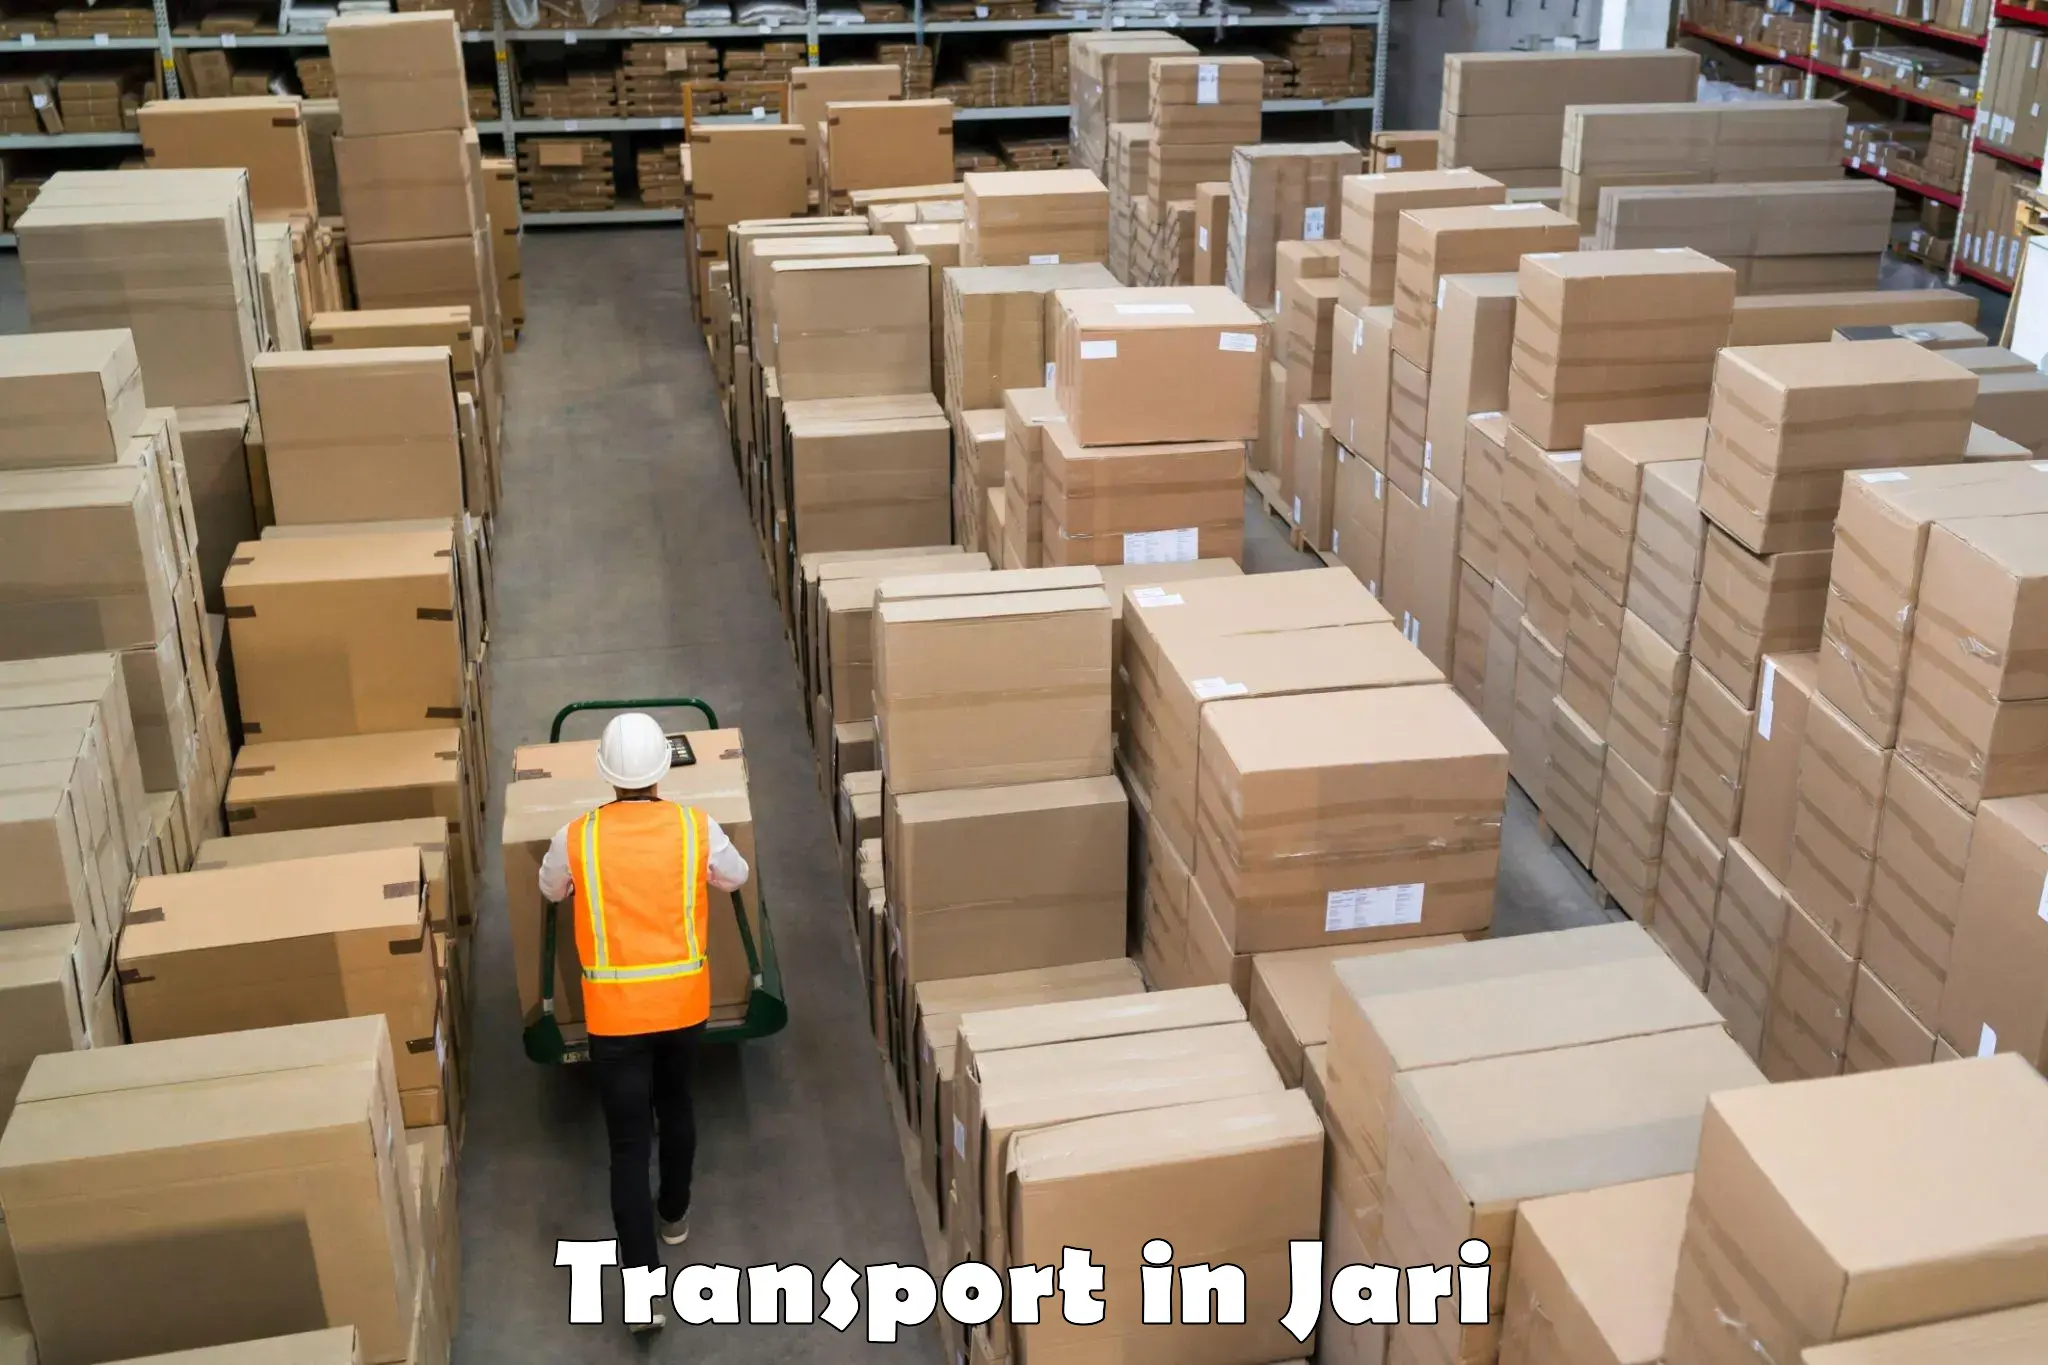 Cargo transport services in Jari